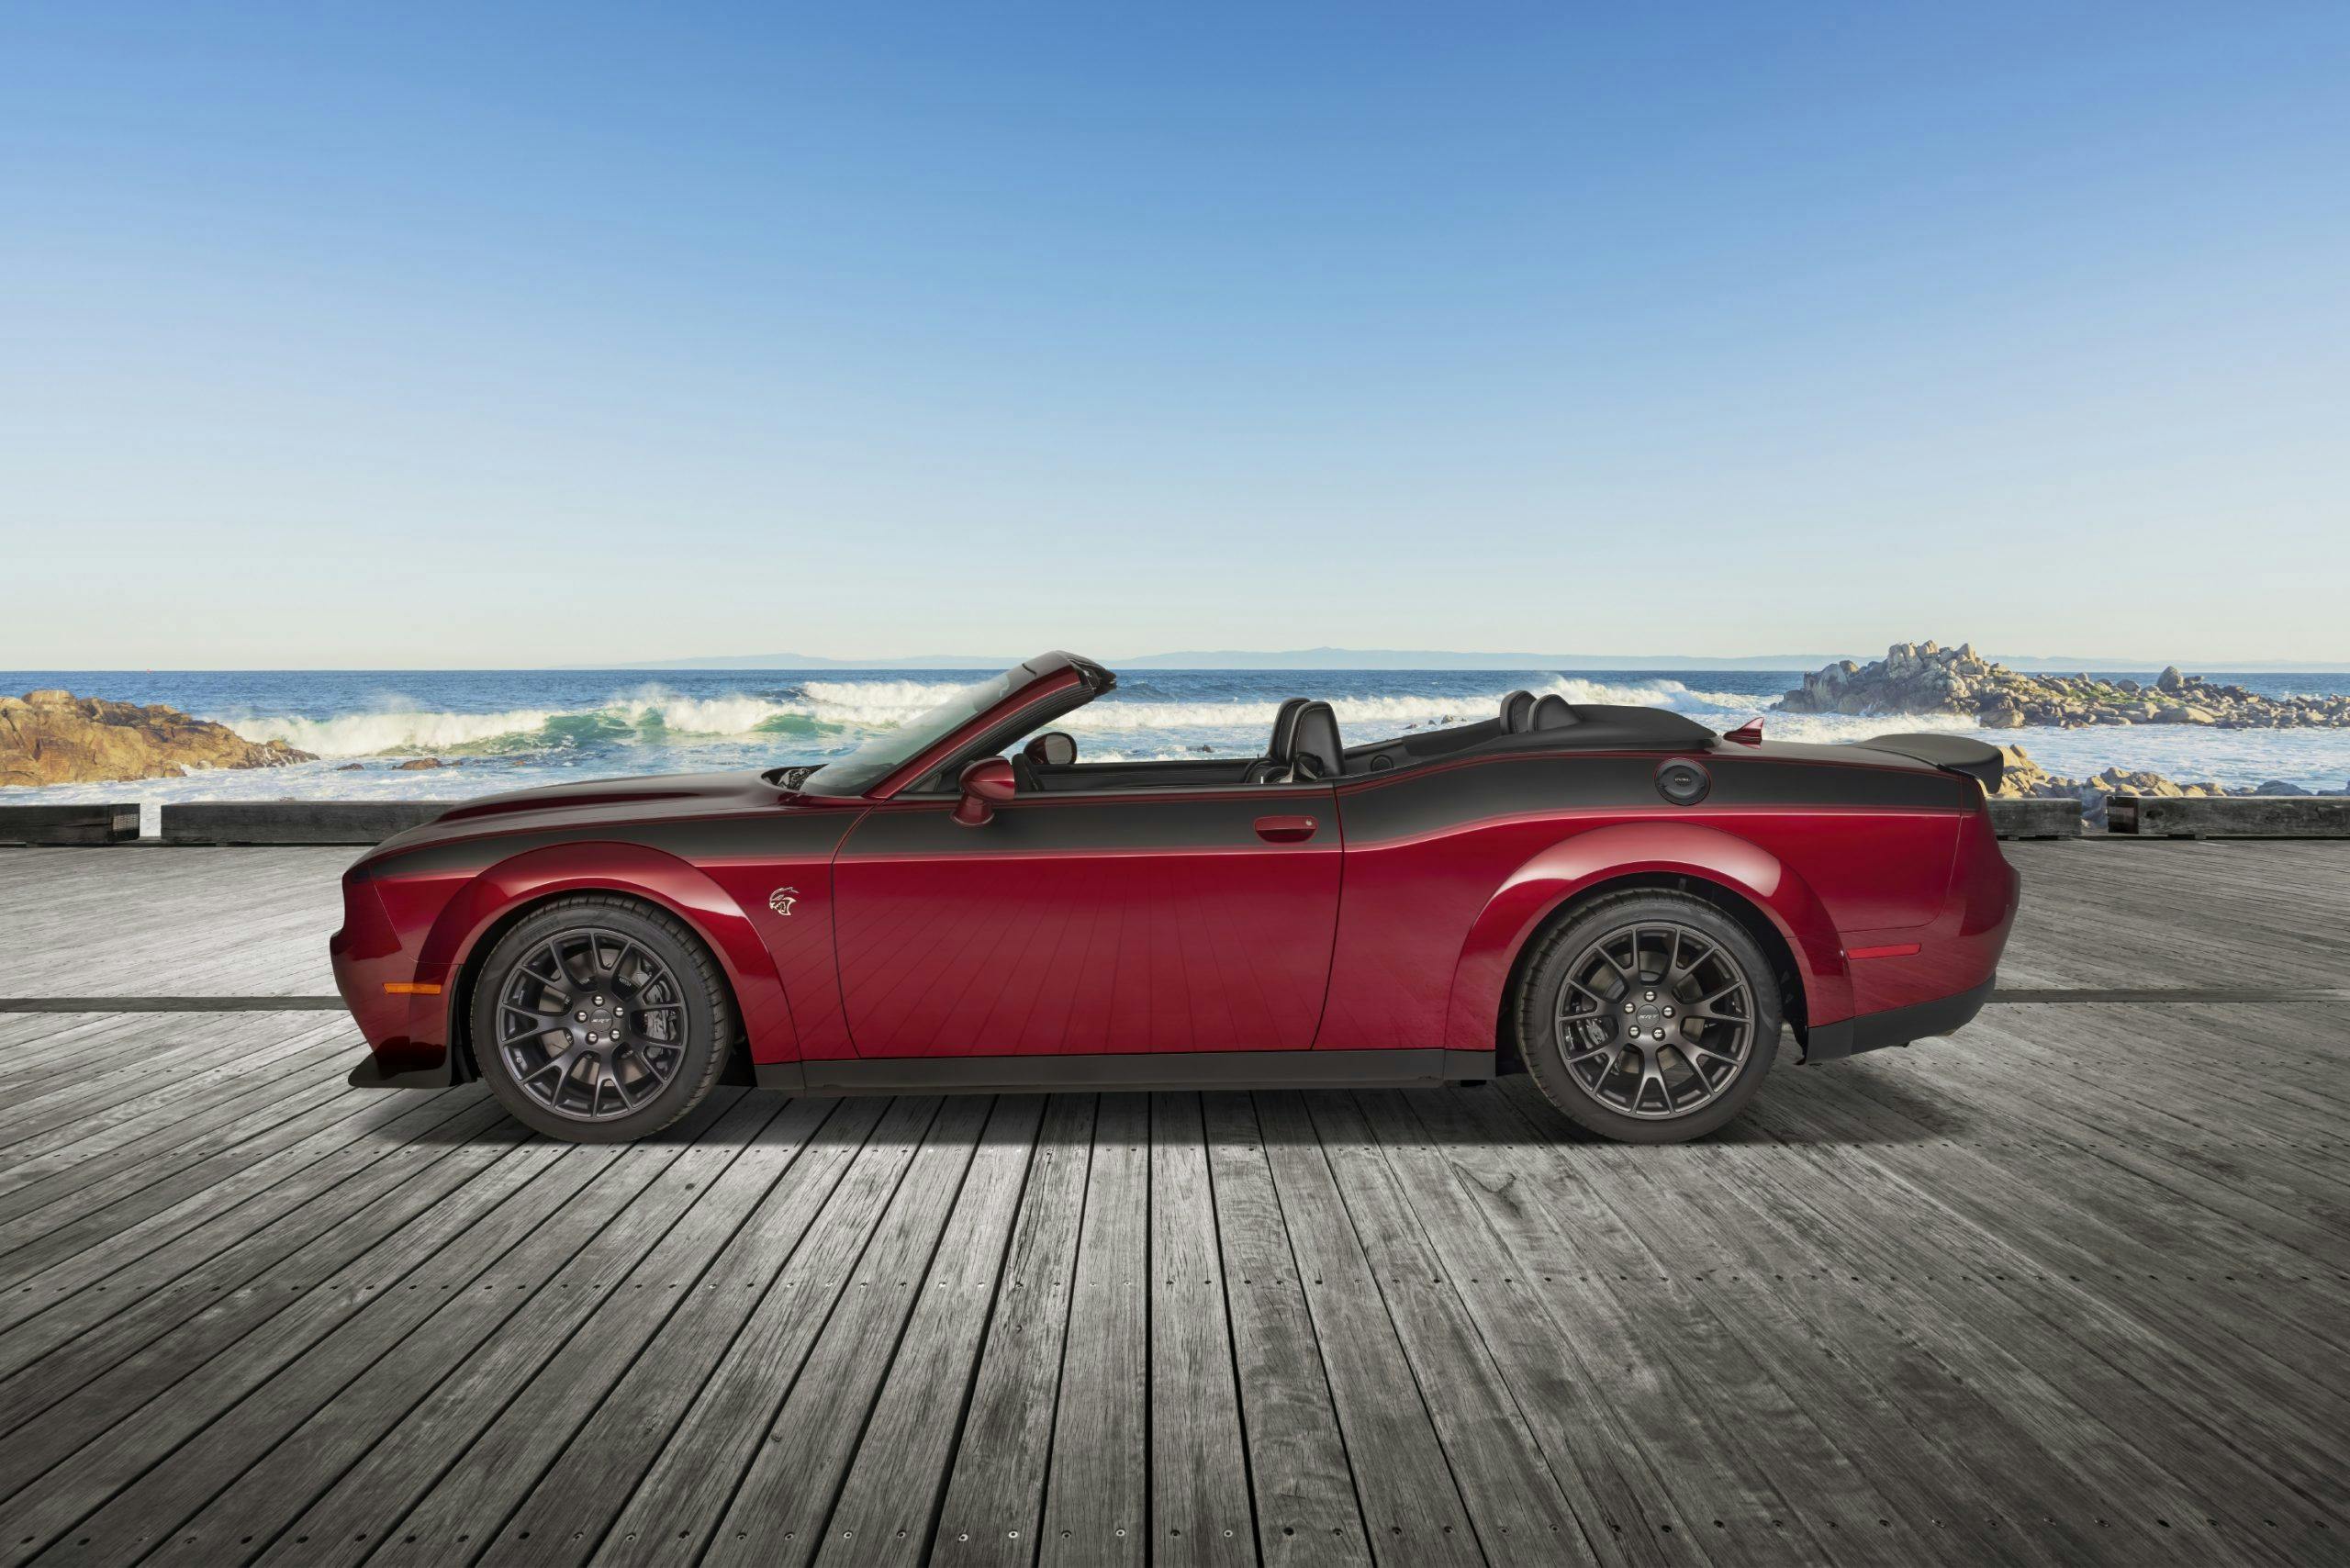 2022 Dodge Challenger Hellcat Jailbreak convertible Drop Top customs